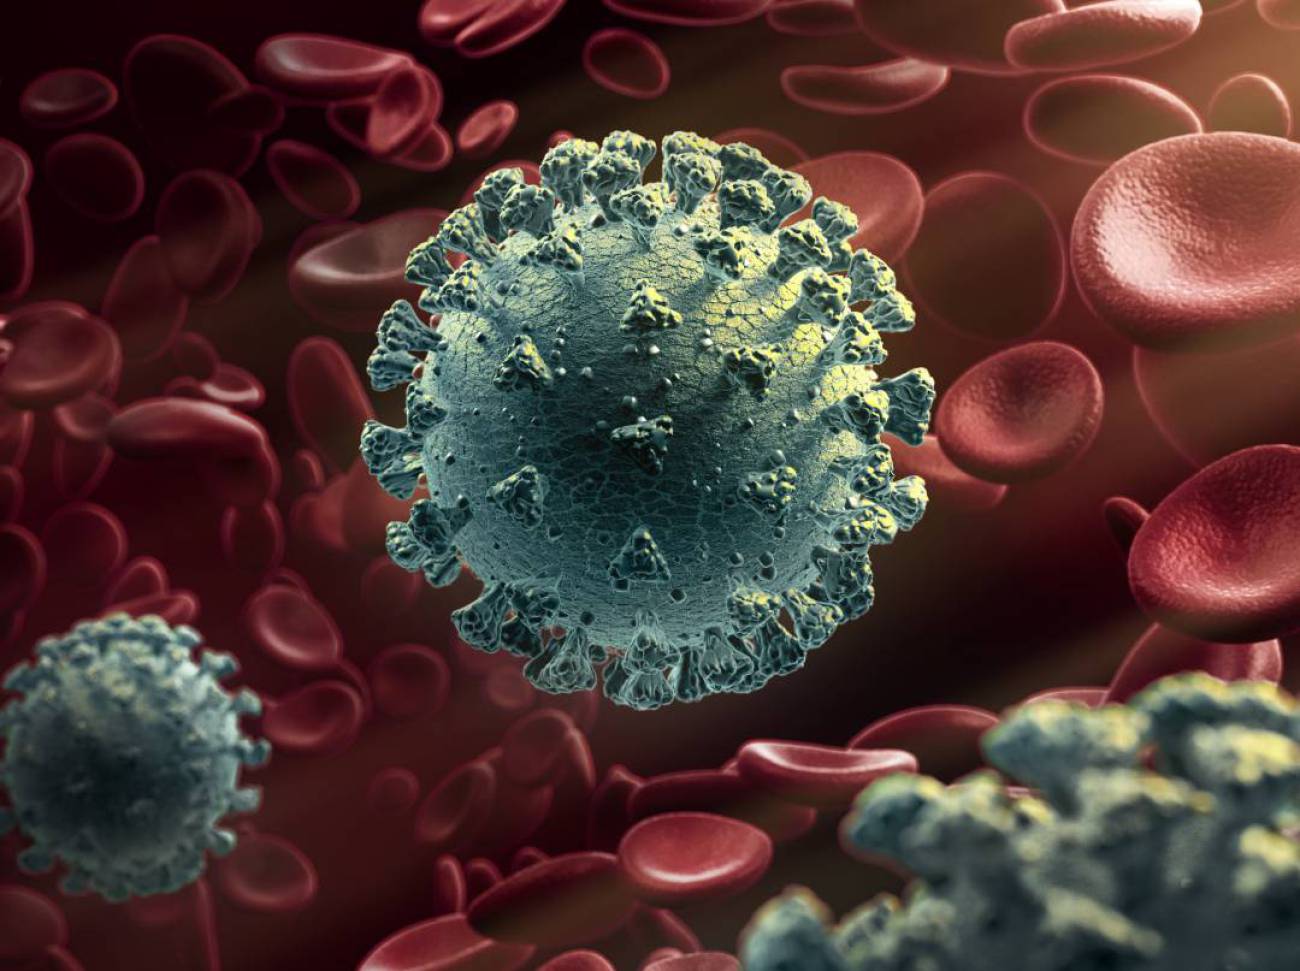 Investigadores descubren lo que podría ser el talón de Aquiles del  coronavirus | Ciencia y tecnología | Cadena SER